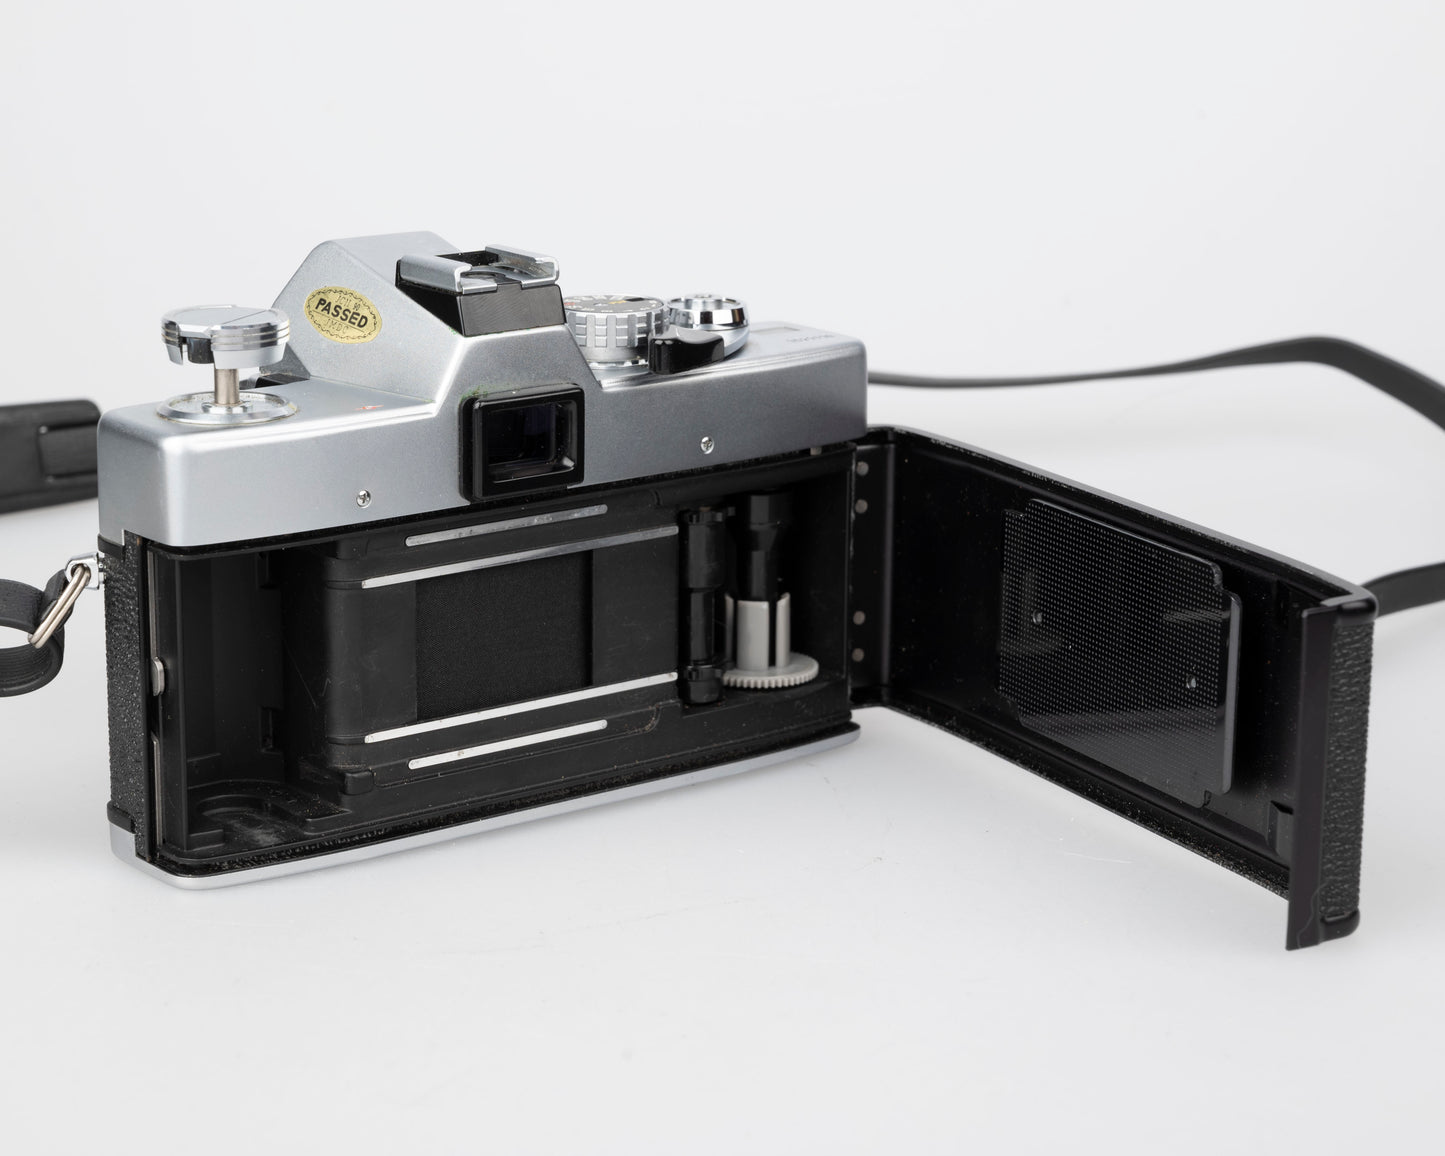 Minolta SRT 200 35mm SLR w/ Rokkor 50mm f1.7 lens + ever-ready case (serial 7527170)